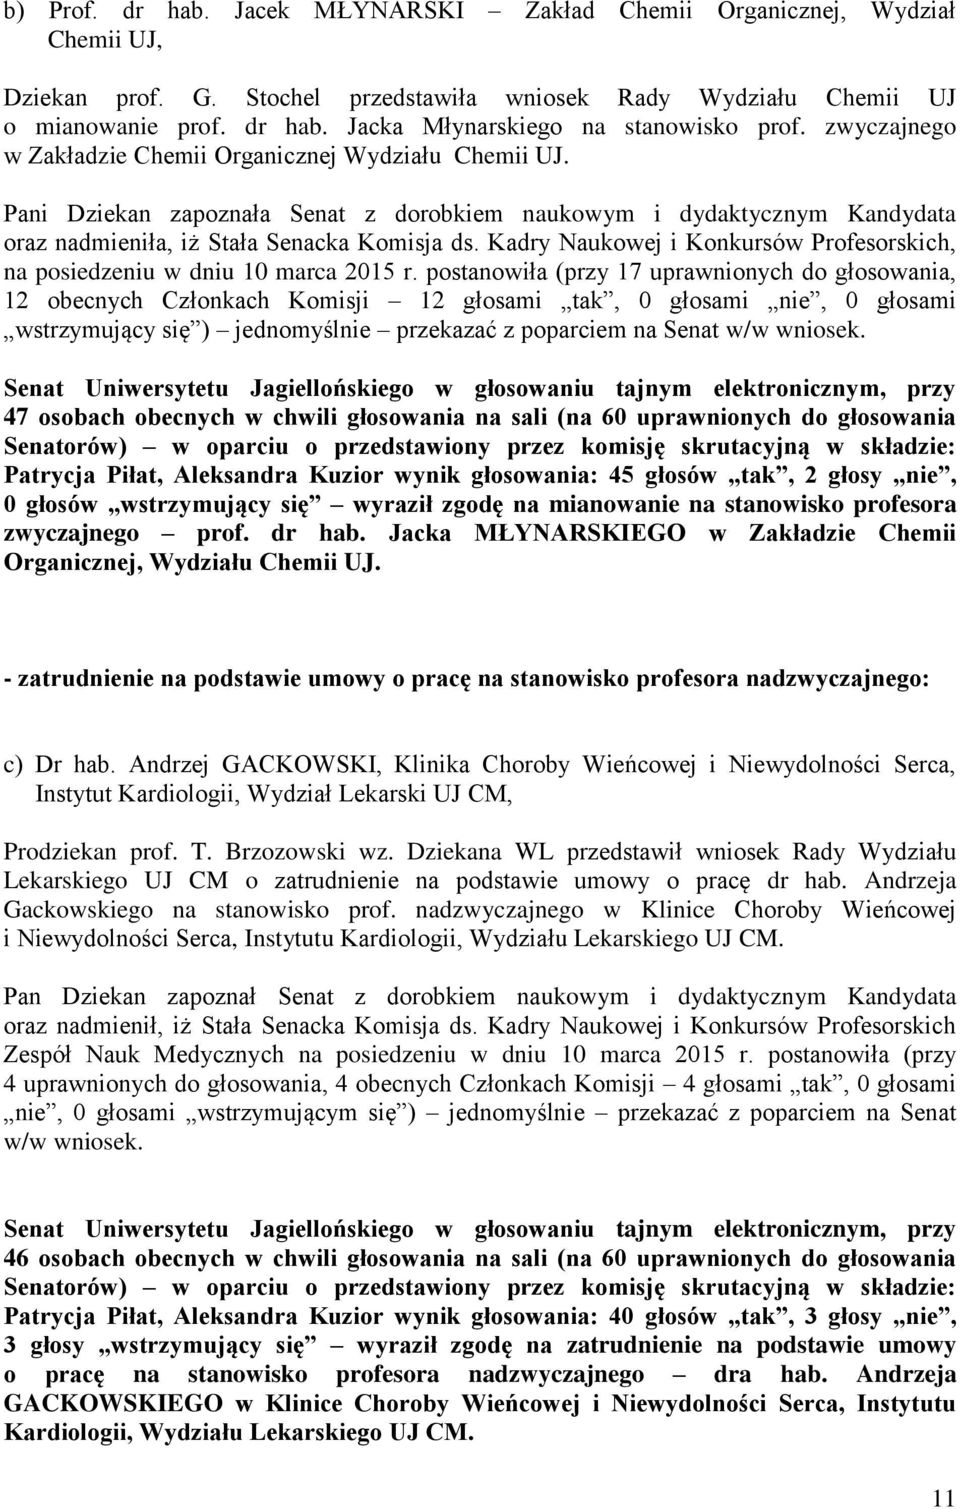 Kadry Naukowej i Konkursów Profesorskich, na posiedzeniu w dniu 10 marca 2015 r.